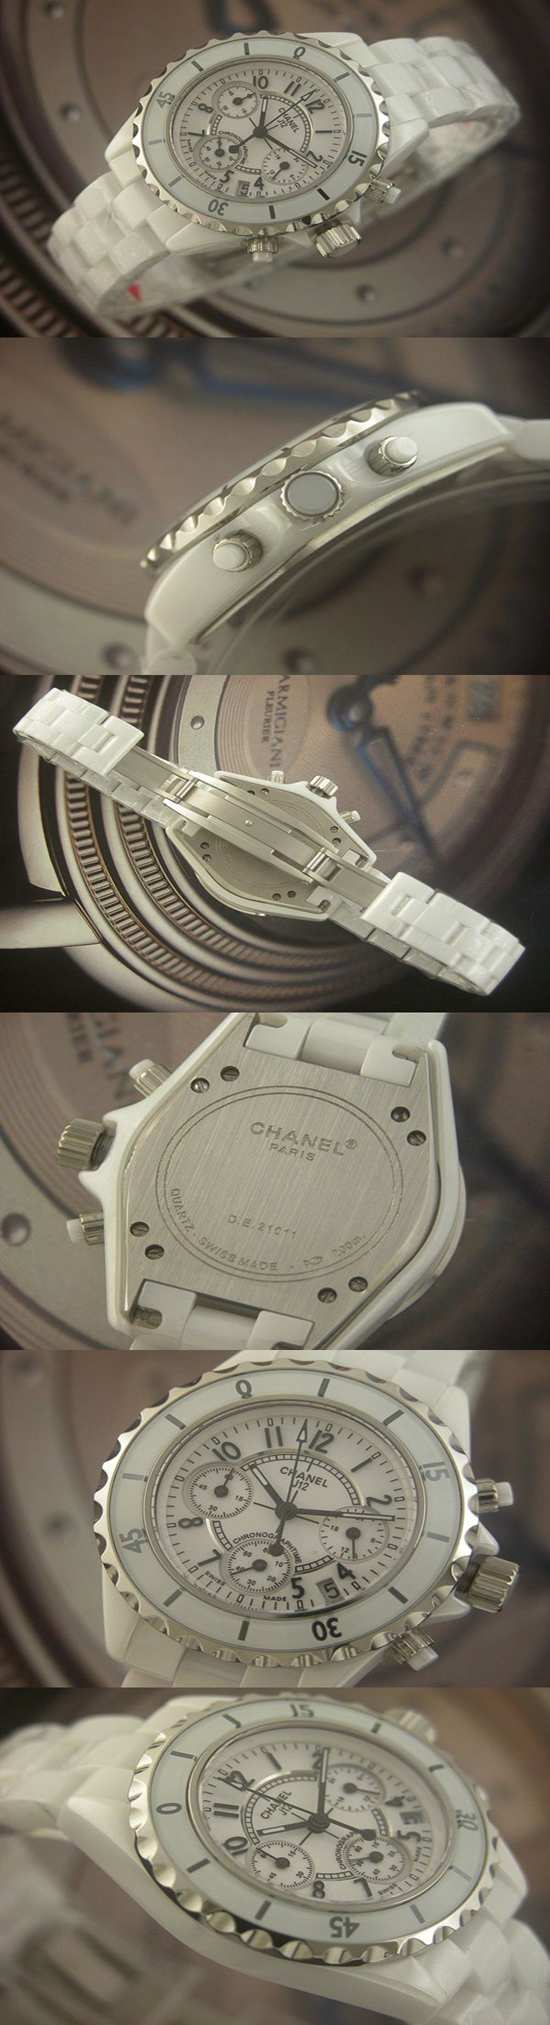 おしゃれなブランド時計がシャネル-CHANEL-H1007-ar-J12-男性用/女性用を提供します.